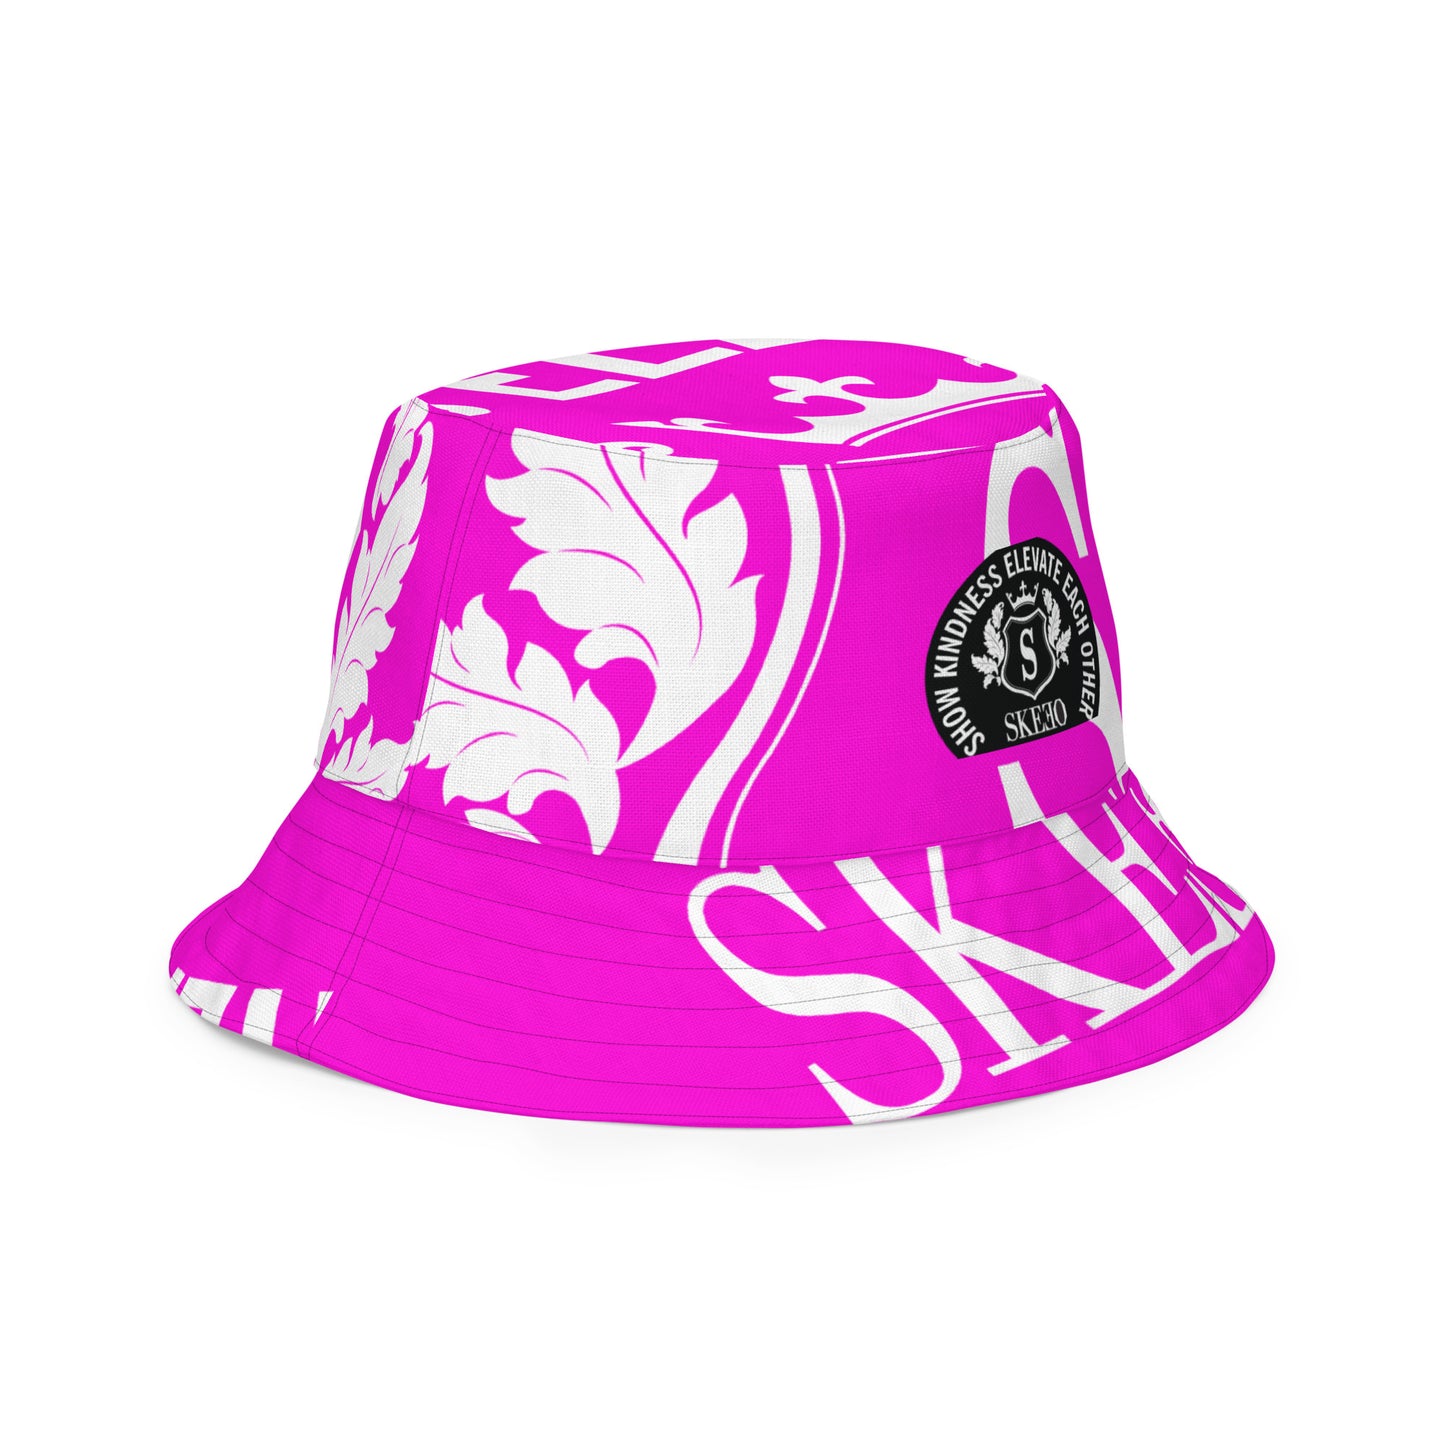 1 ASK Neon Pink Reversible bucket hat